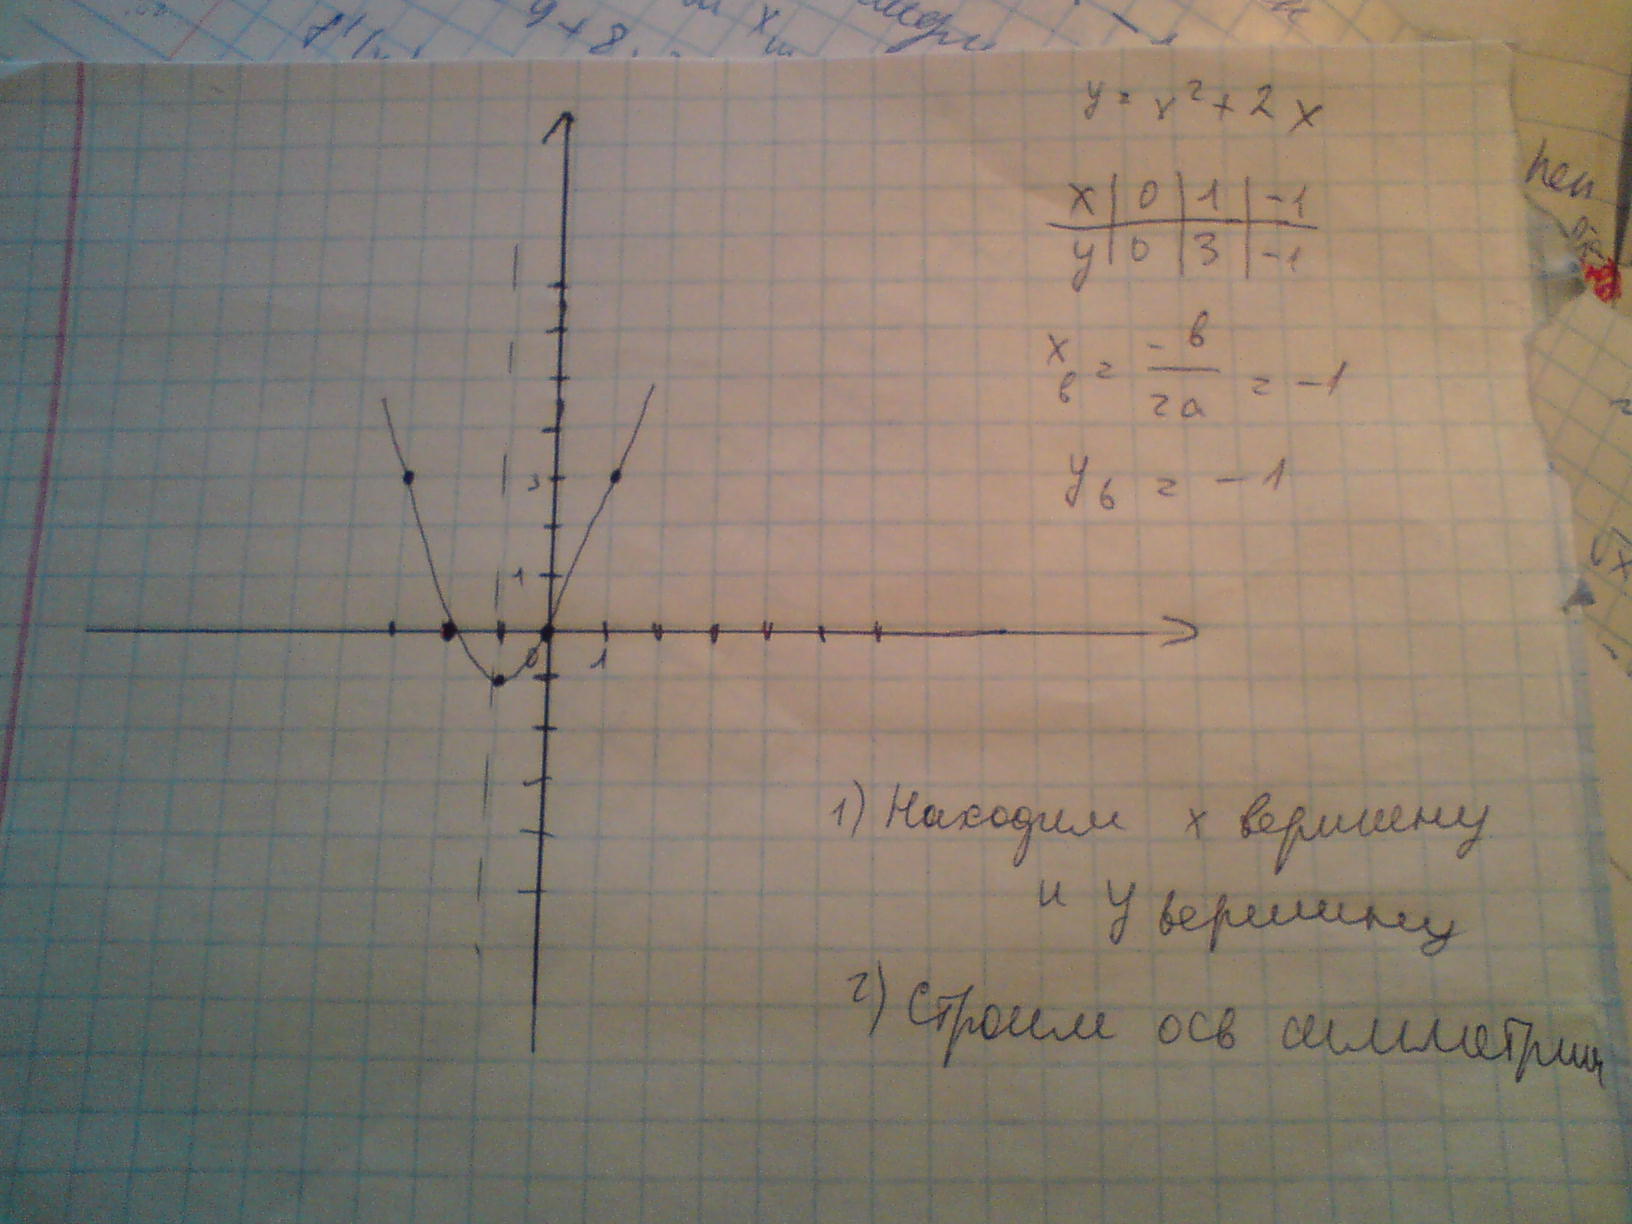 Х y 1 0 ответы. Какая из прямых у=2х-9, у=-5х+1 или у=0,5 проходит через начало координат.